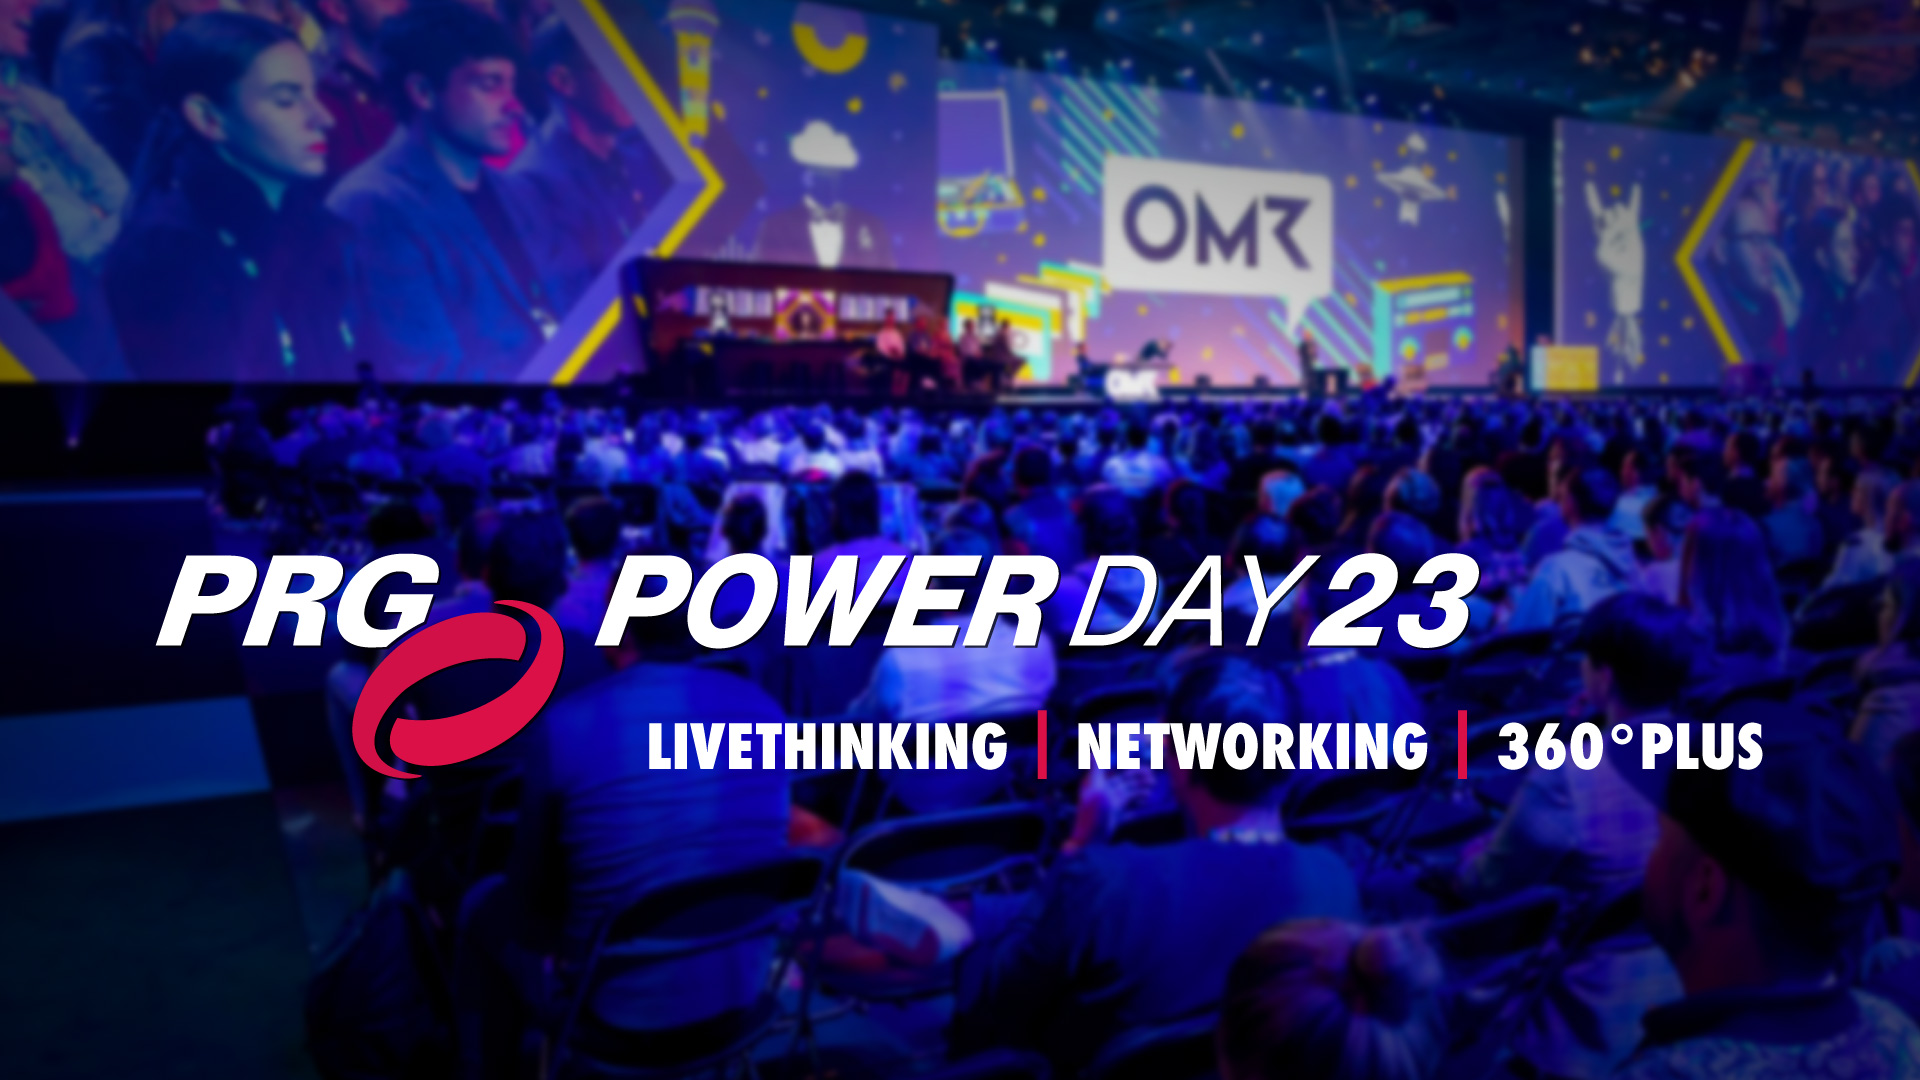 El primer PRG Powerday 2023 tuvo lugar en Colonia el 19 de junio de 2023 e inspiró a los invitados con un variado programa centrado en el livethinking, el networking y 360° Plus.